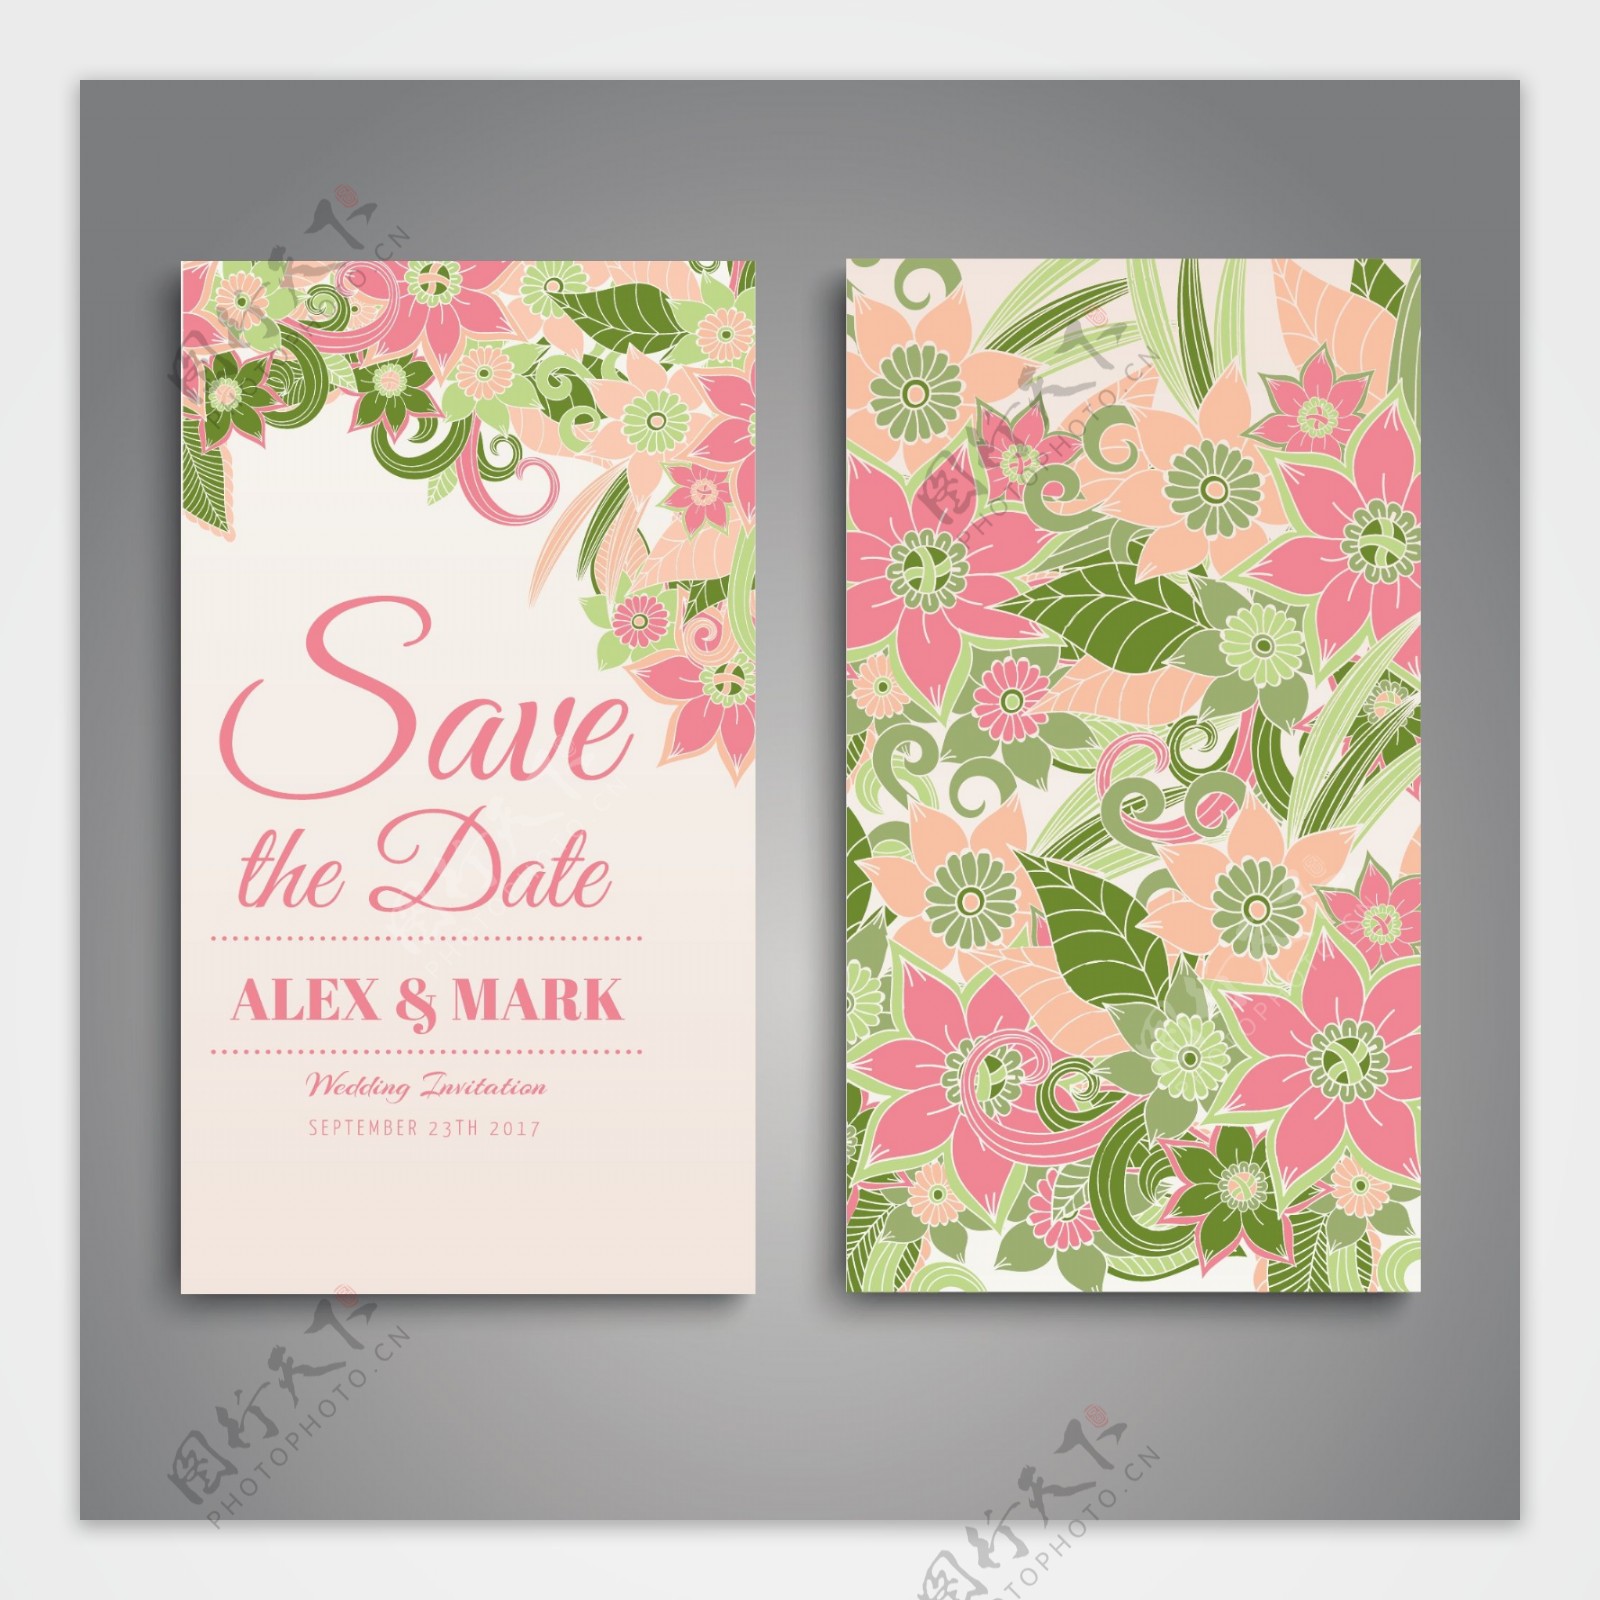 粉红鲜花装饰图案婚礼卡设计